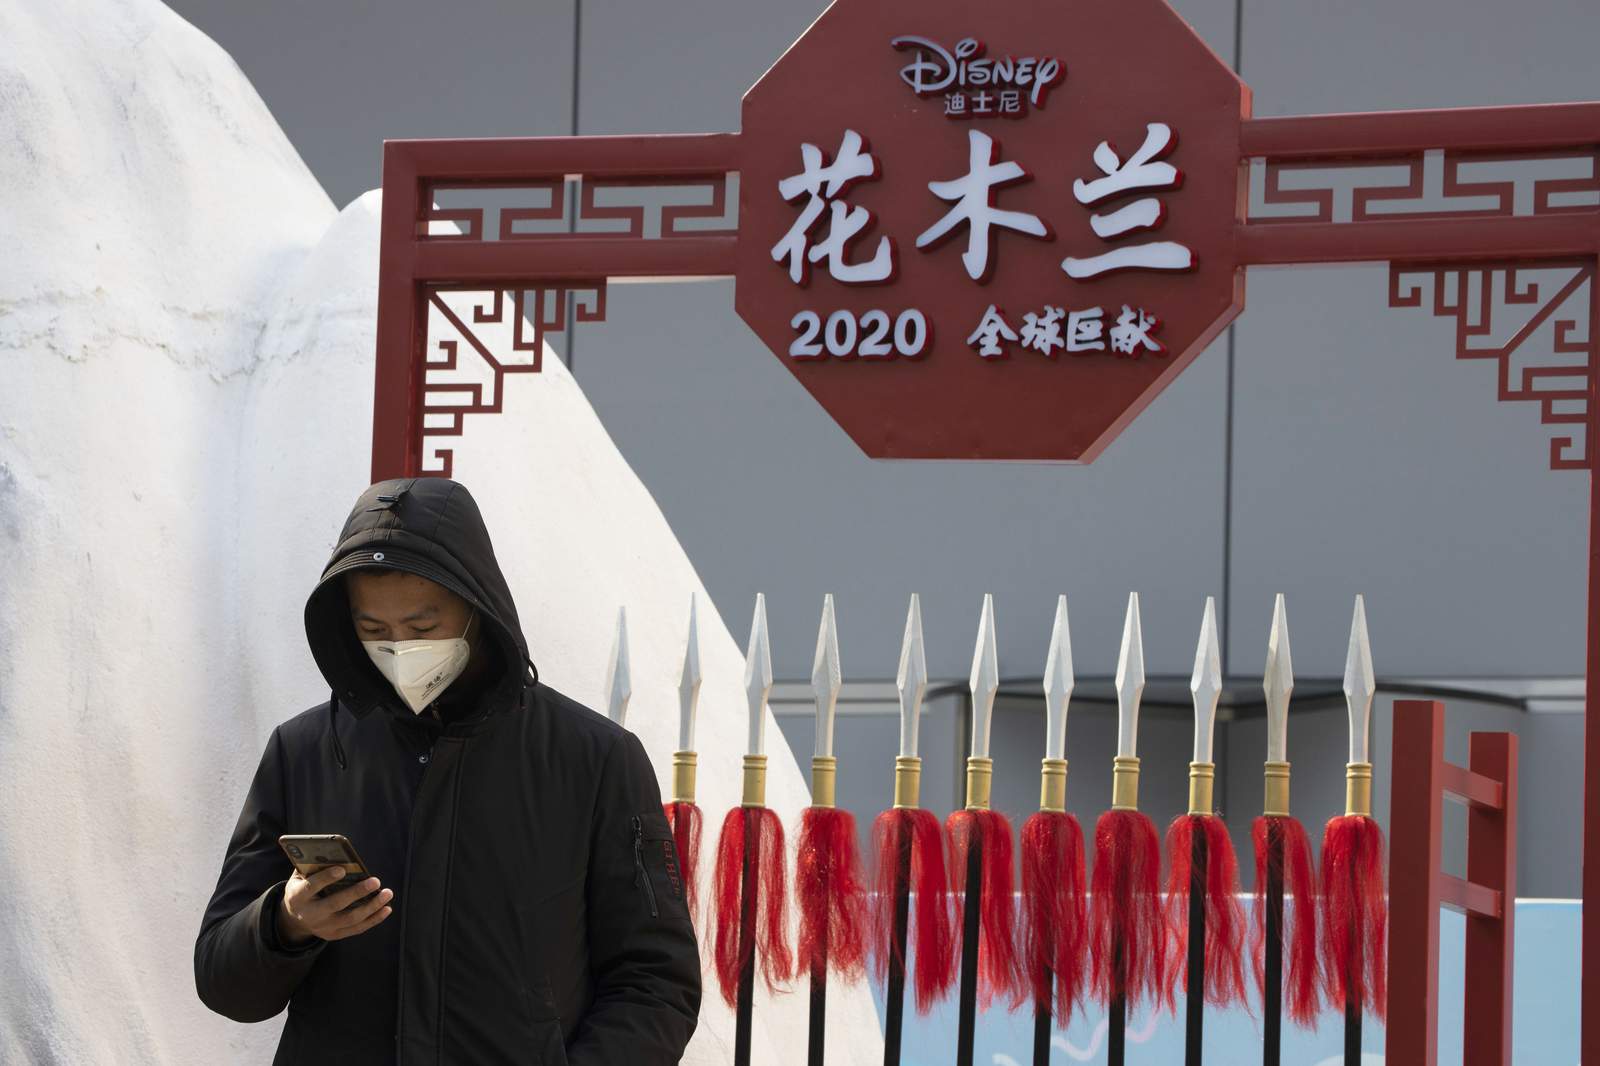 Disney criticized for filming 'Mulan' in China's Xinjiang